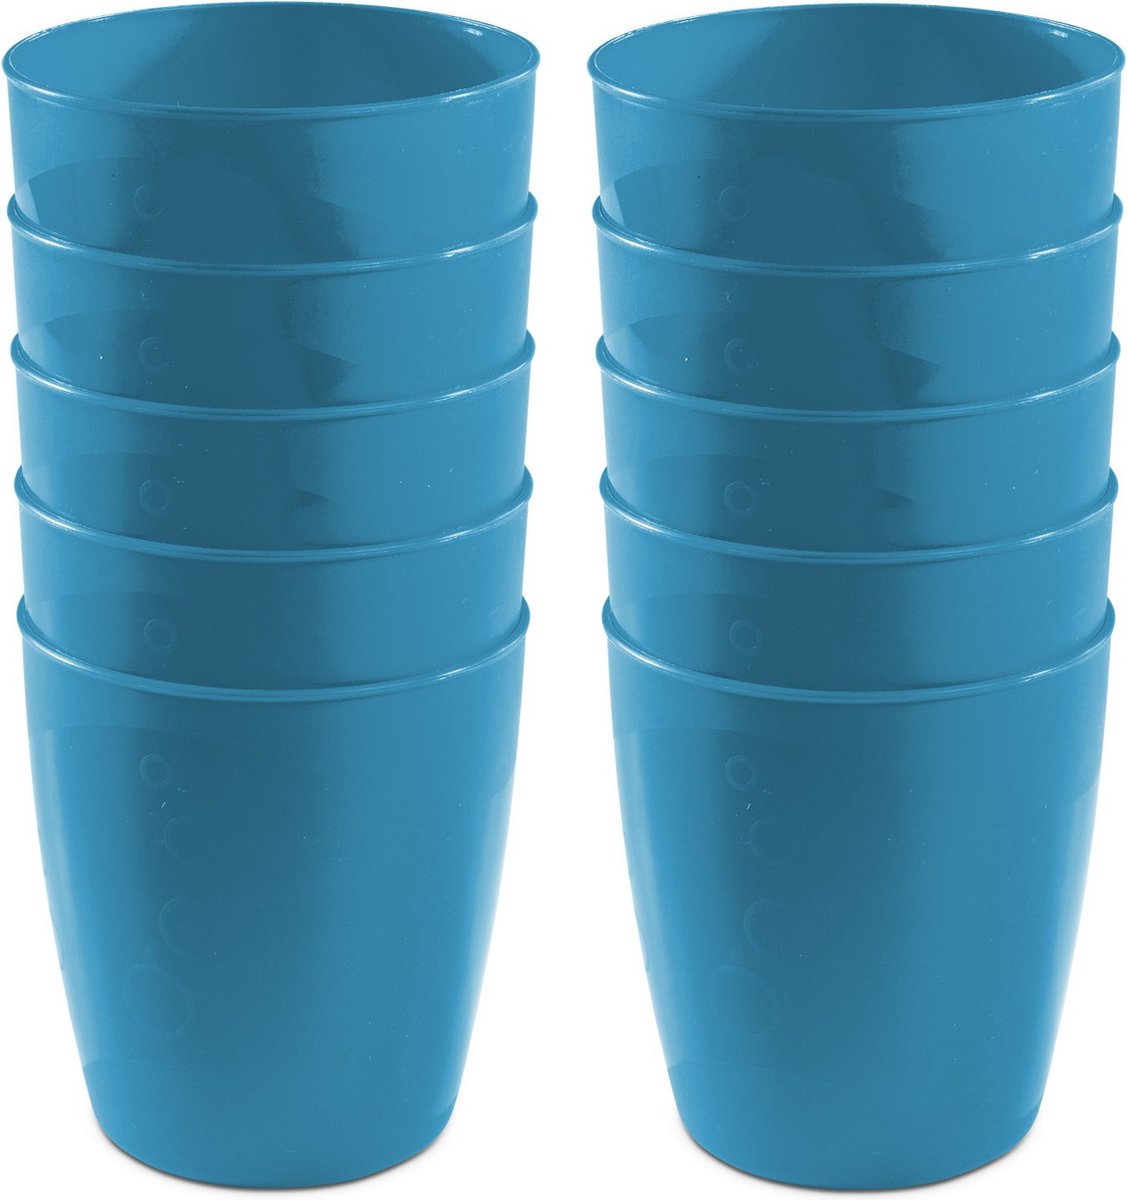 15x drinkbekers van kunststof 300 ml in het blauwï¿½- Limonade bekers - Campingservies/picknickservies